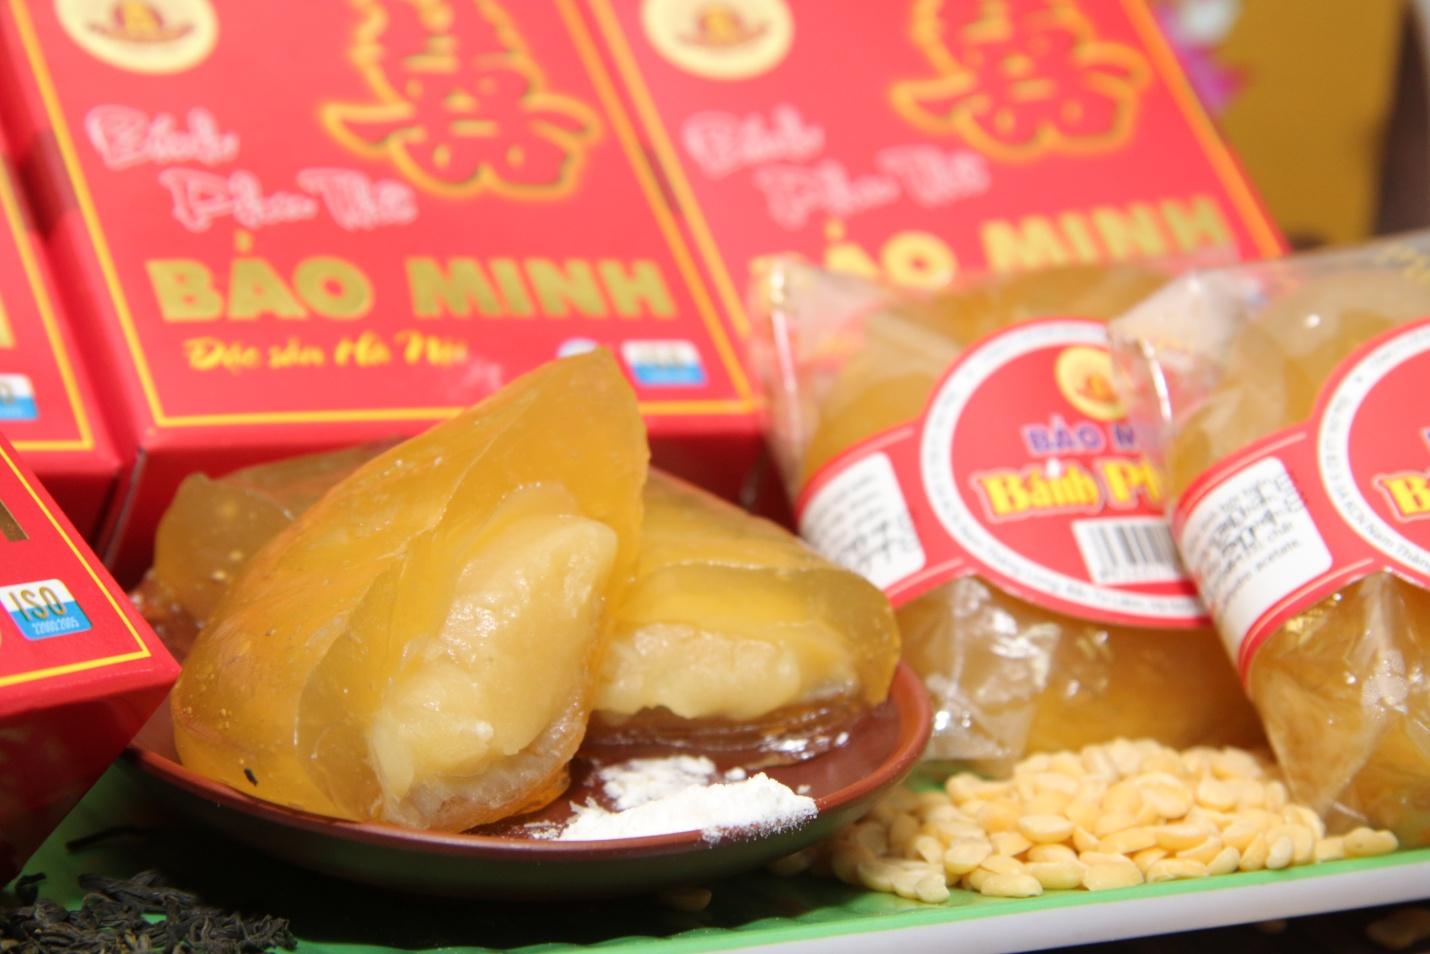 Bánh phu thê Bảo Minh